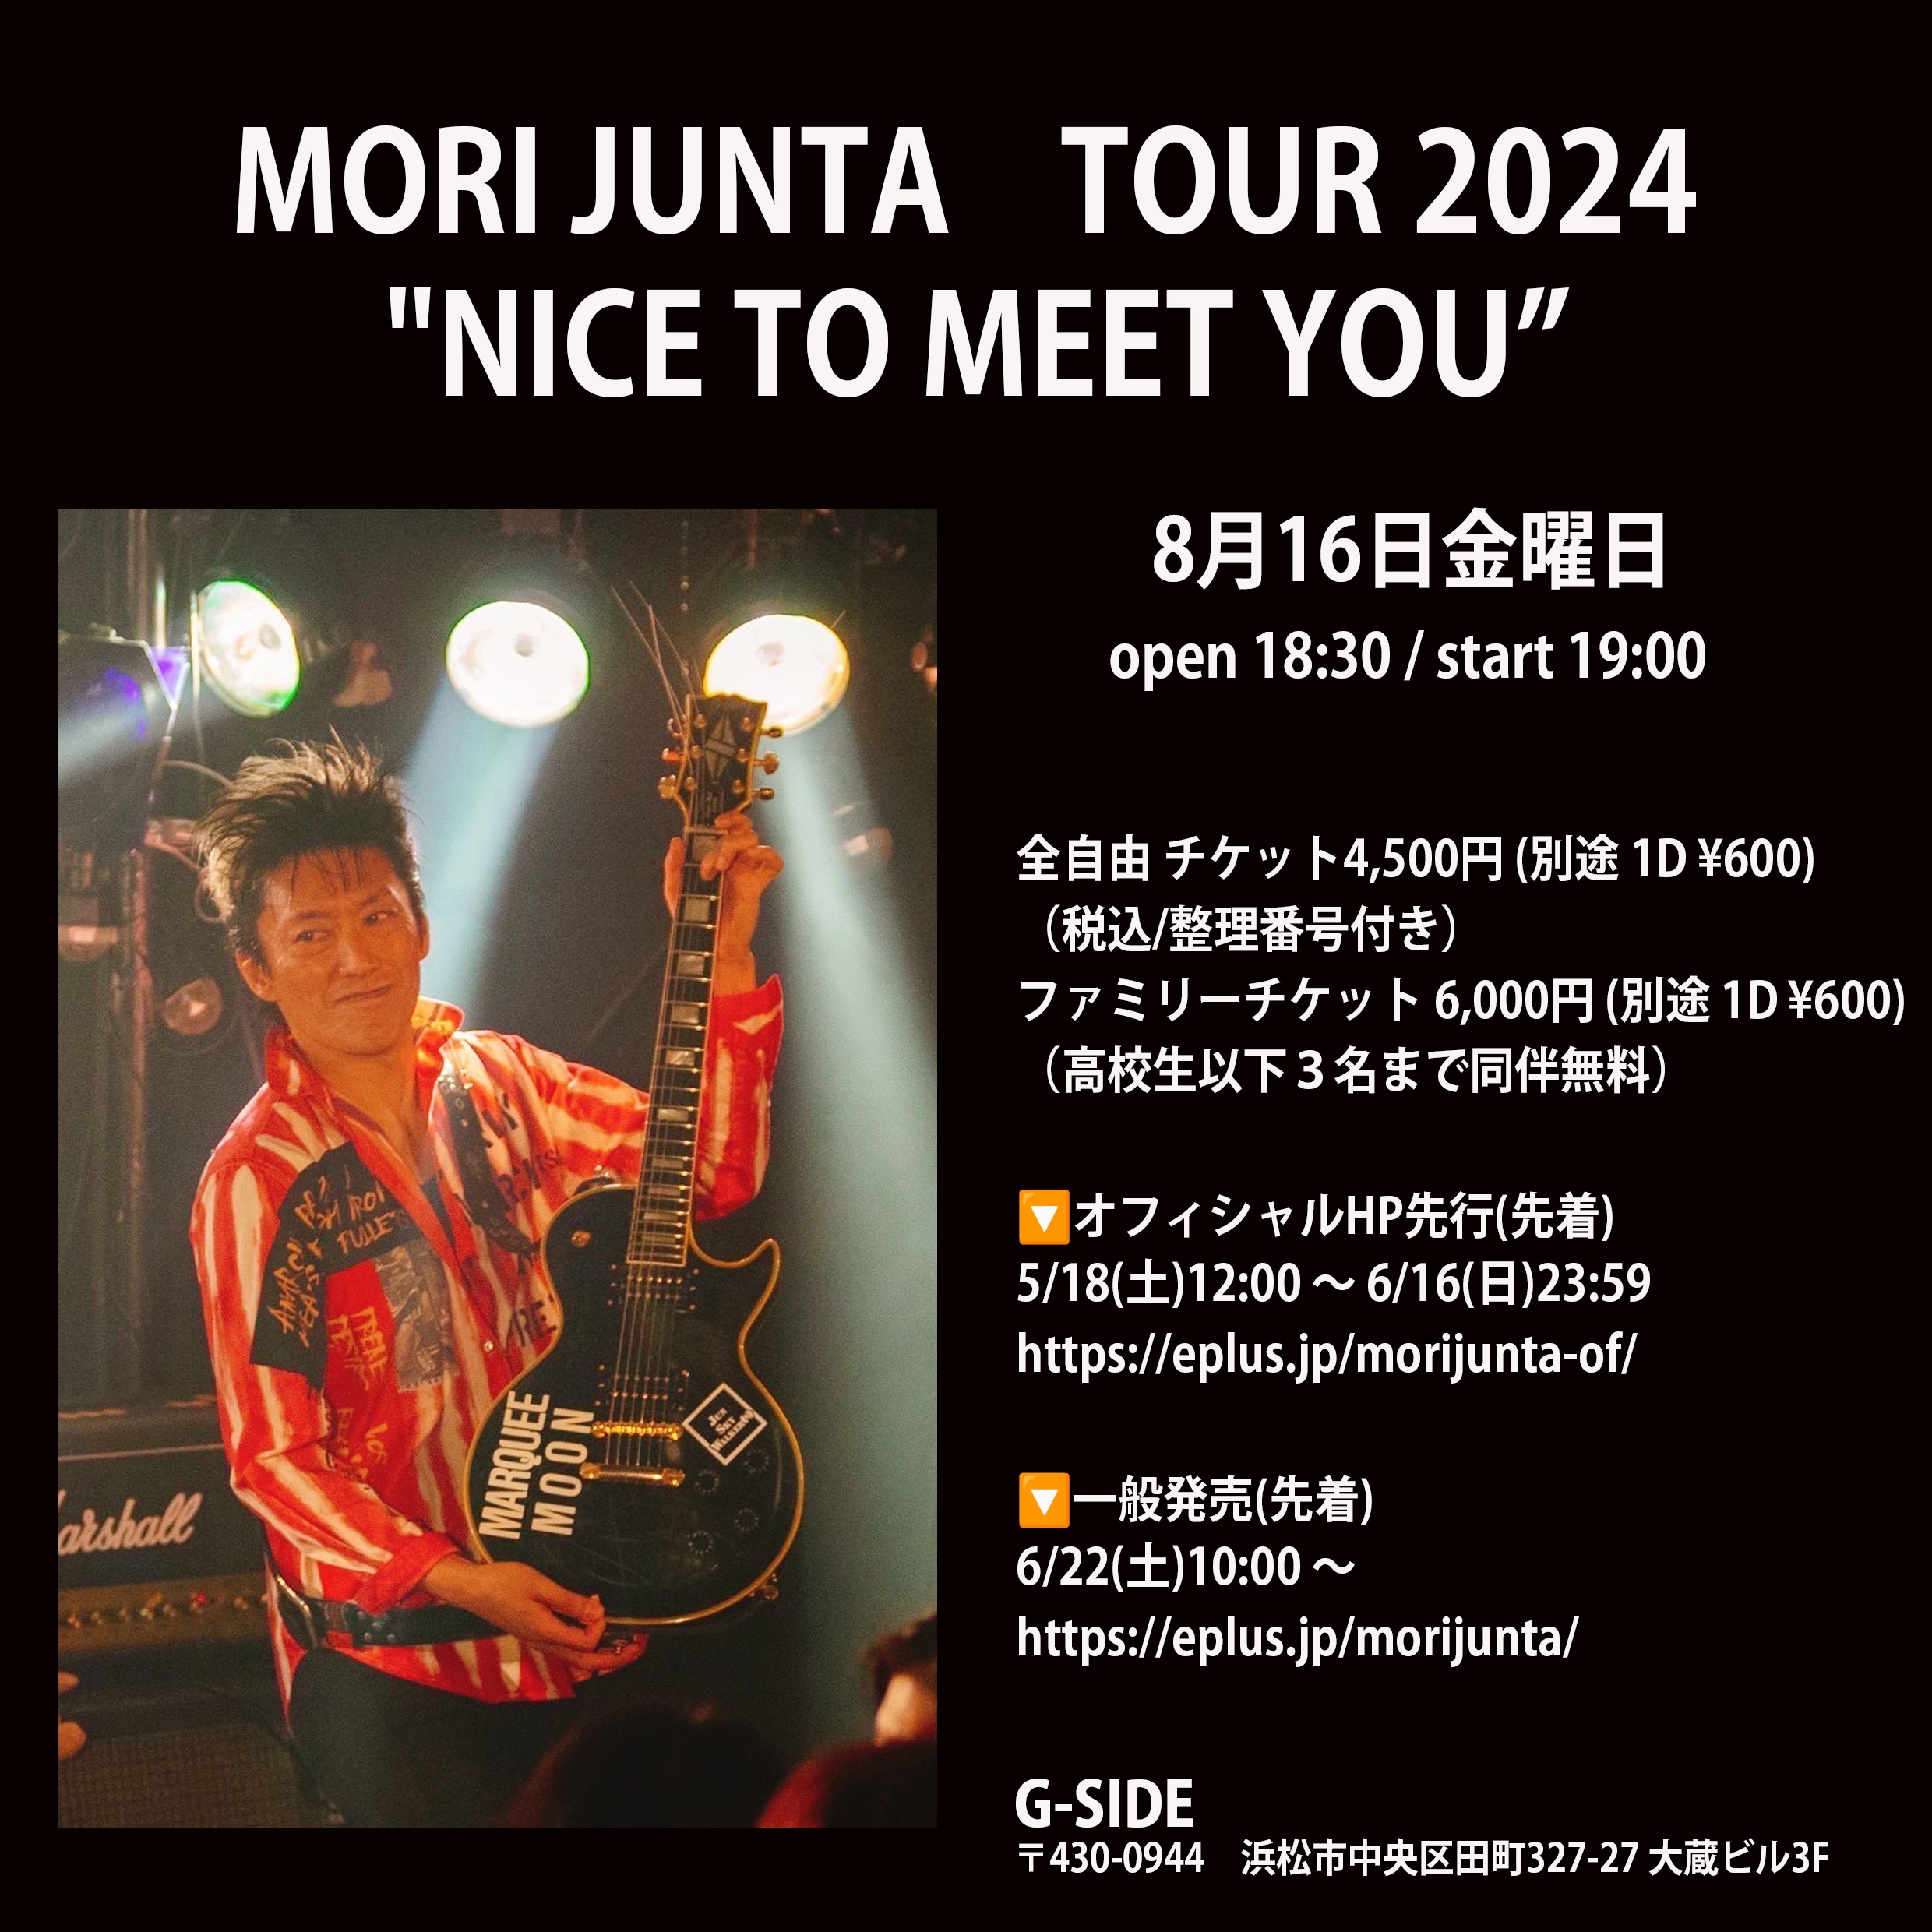 8月16日金曜日 MORI JUNTA TOUR 2024 “NICE TO MEET YOU”